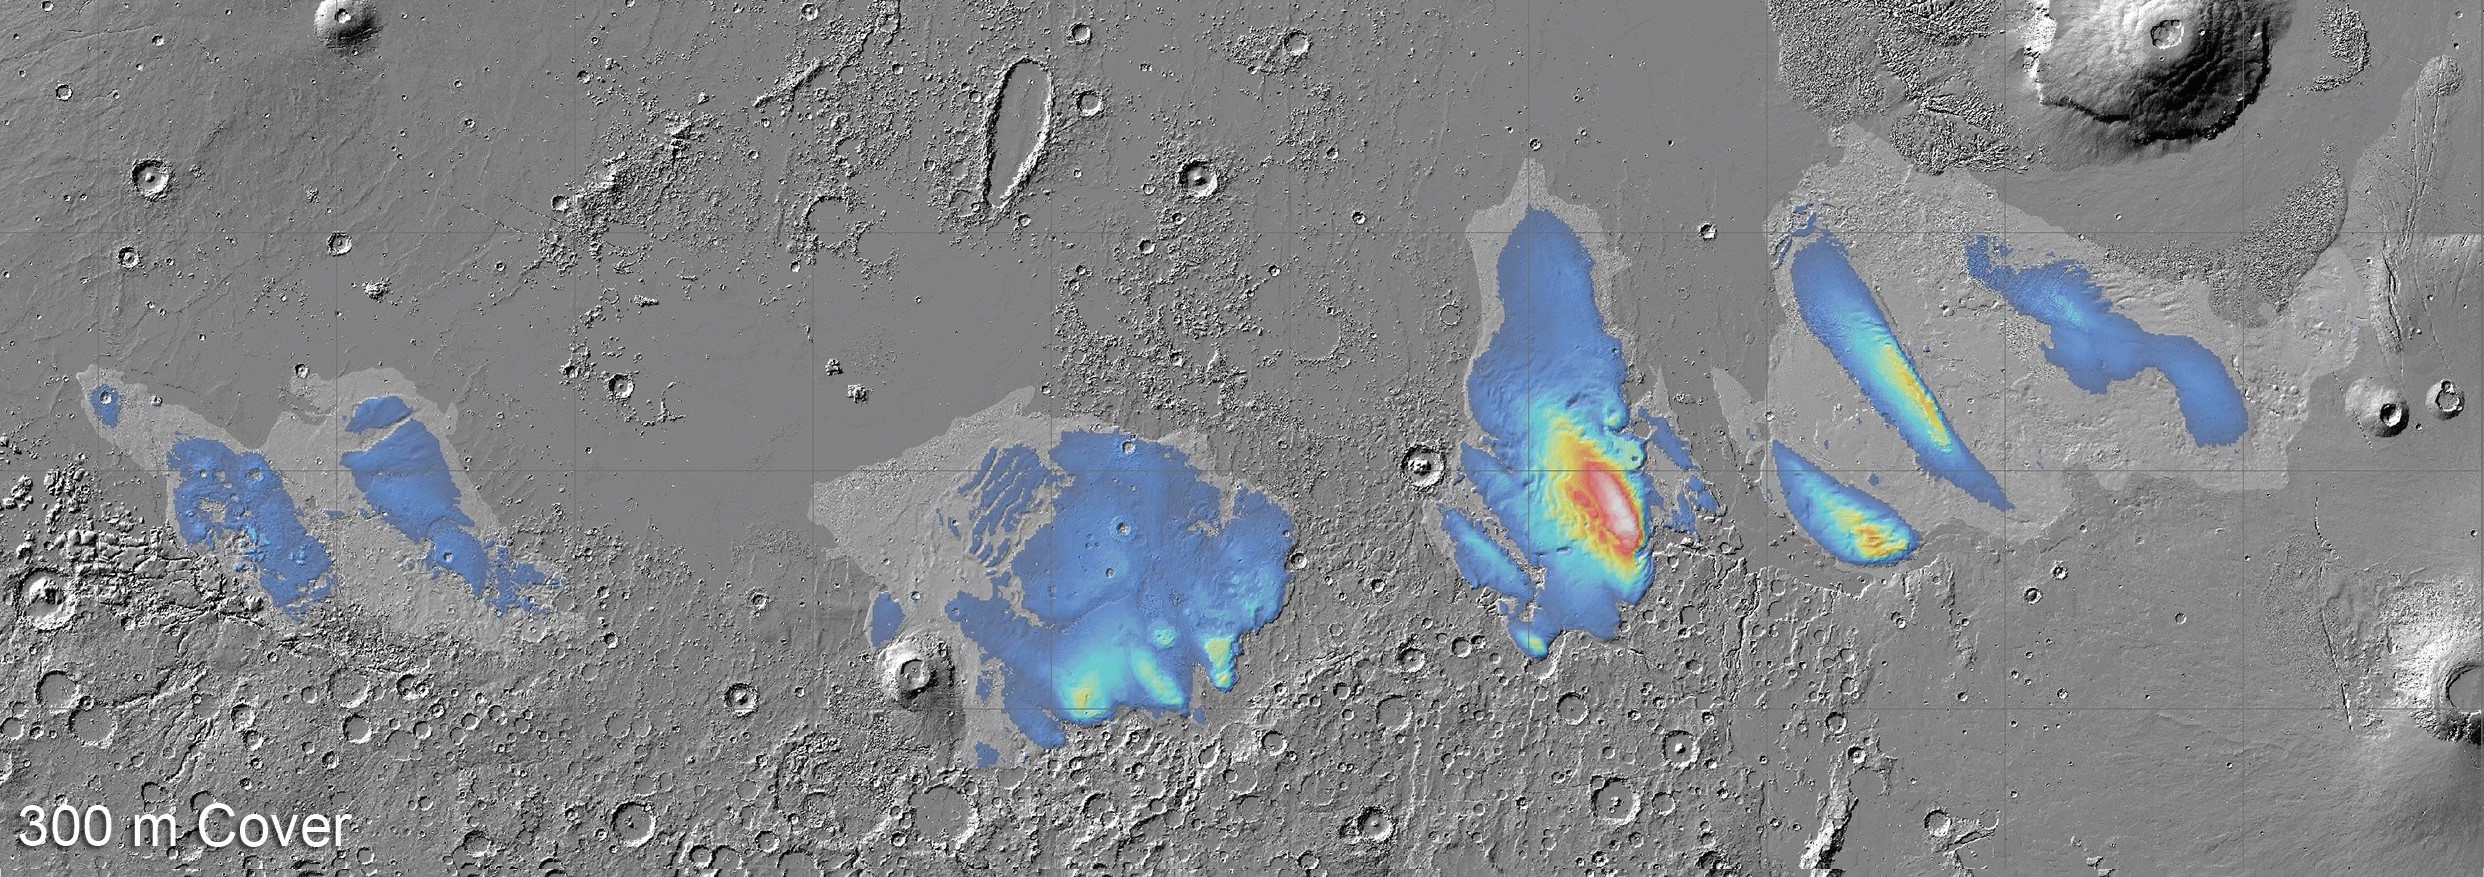 Agua en Marte: encuentran inmensos depósitos de hielo en el ecuador del planeta rojo